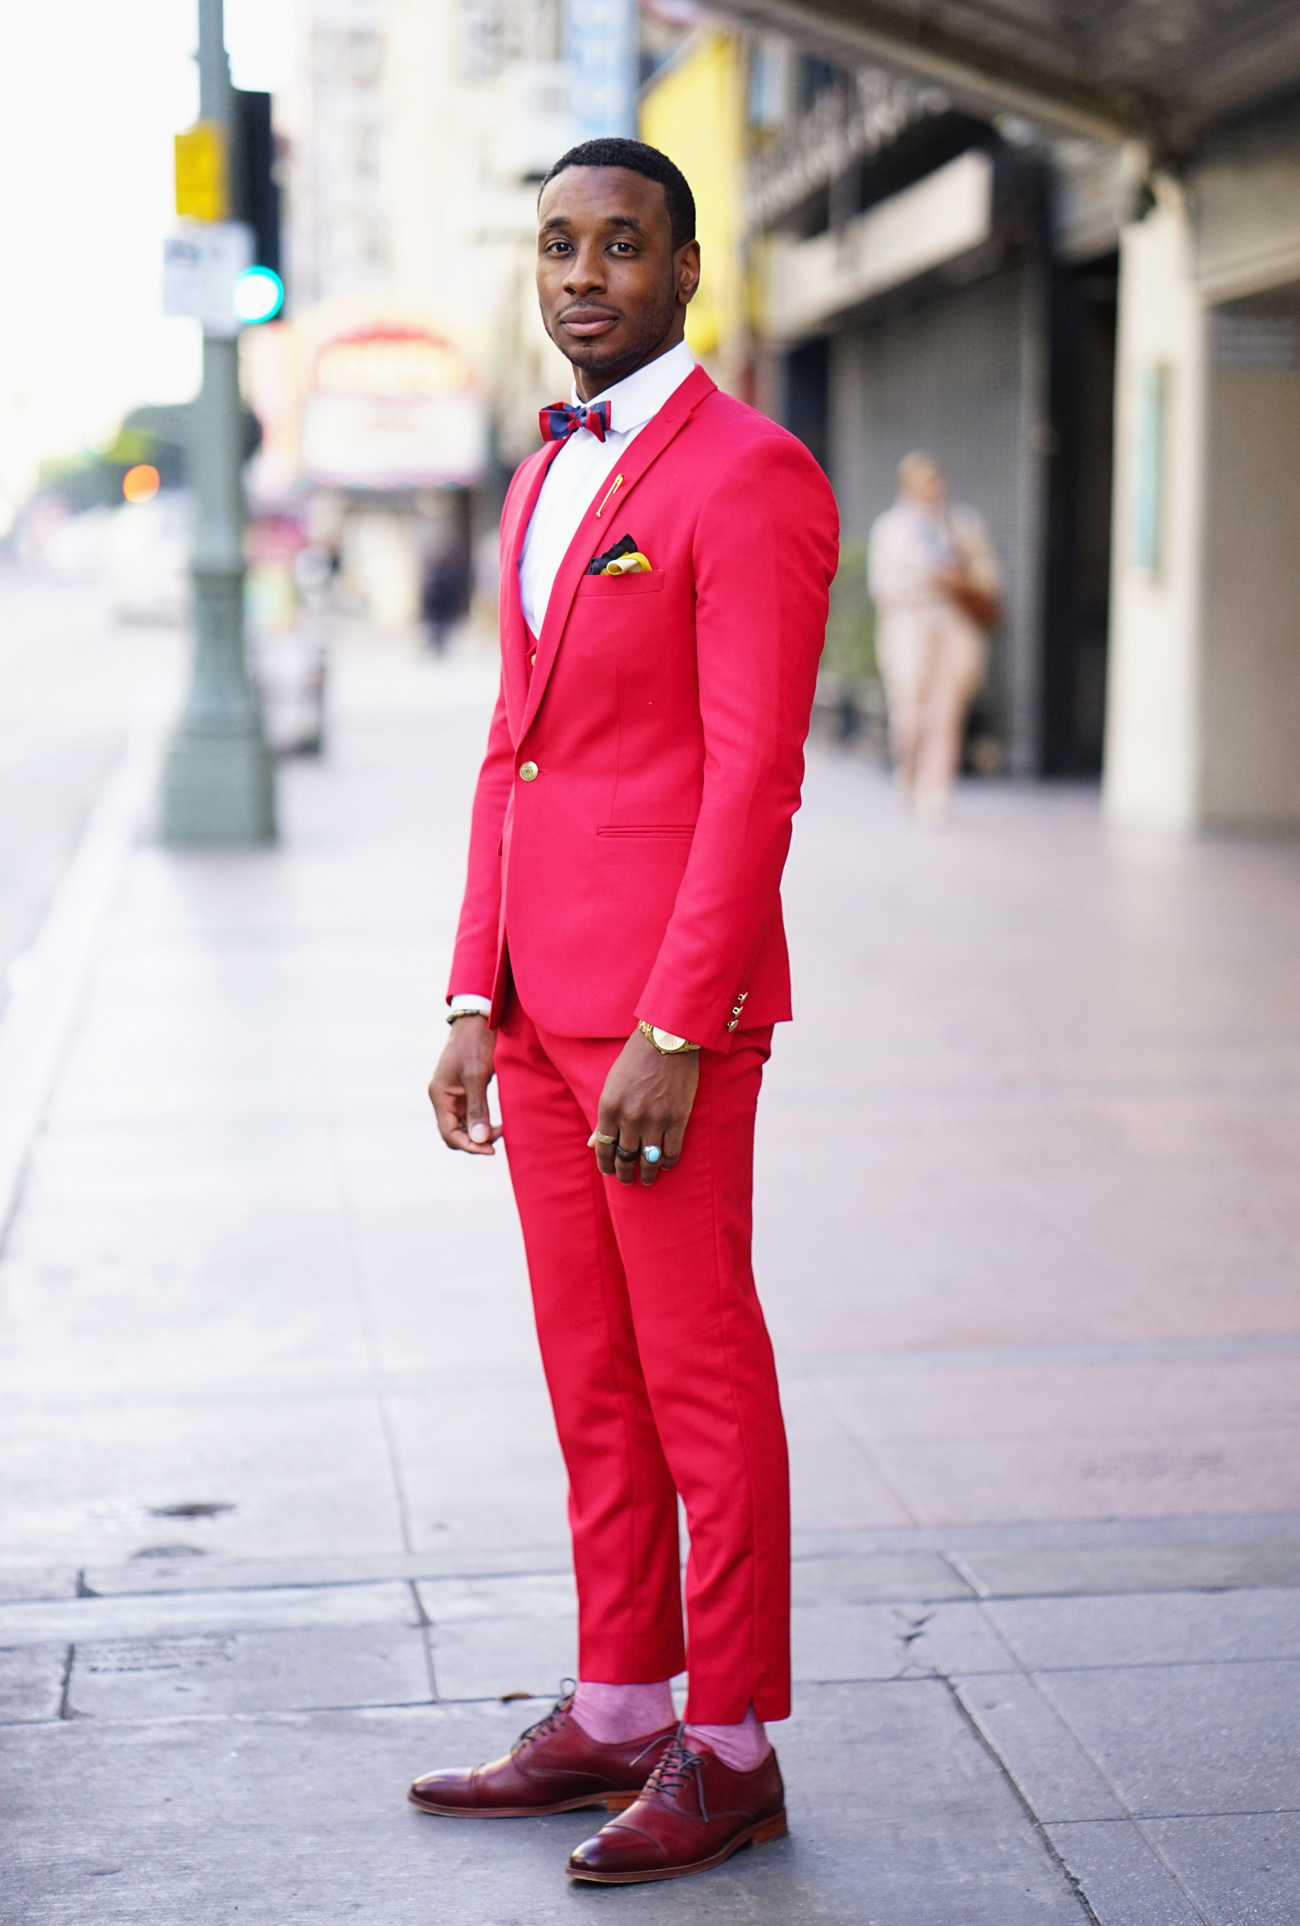 Premium Men's Red Three Piece Suit special Occasion Attire Tailored Suit  the Rising Sun Store, Vardo - Etsy